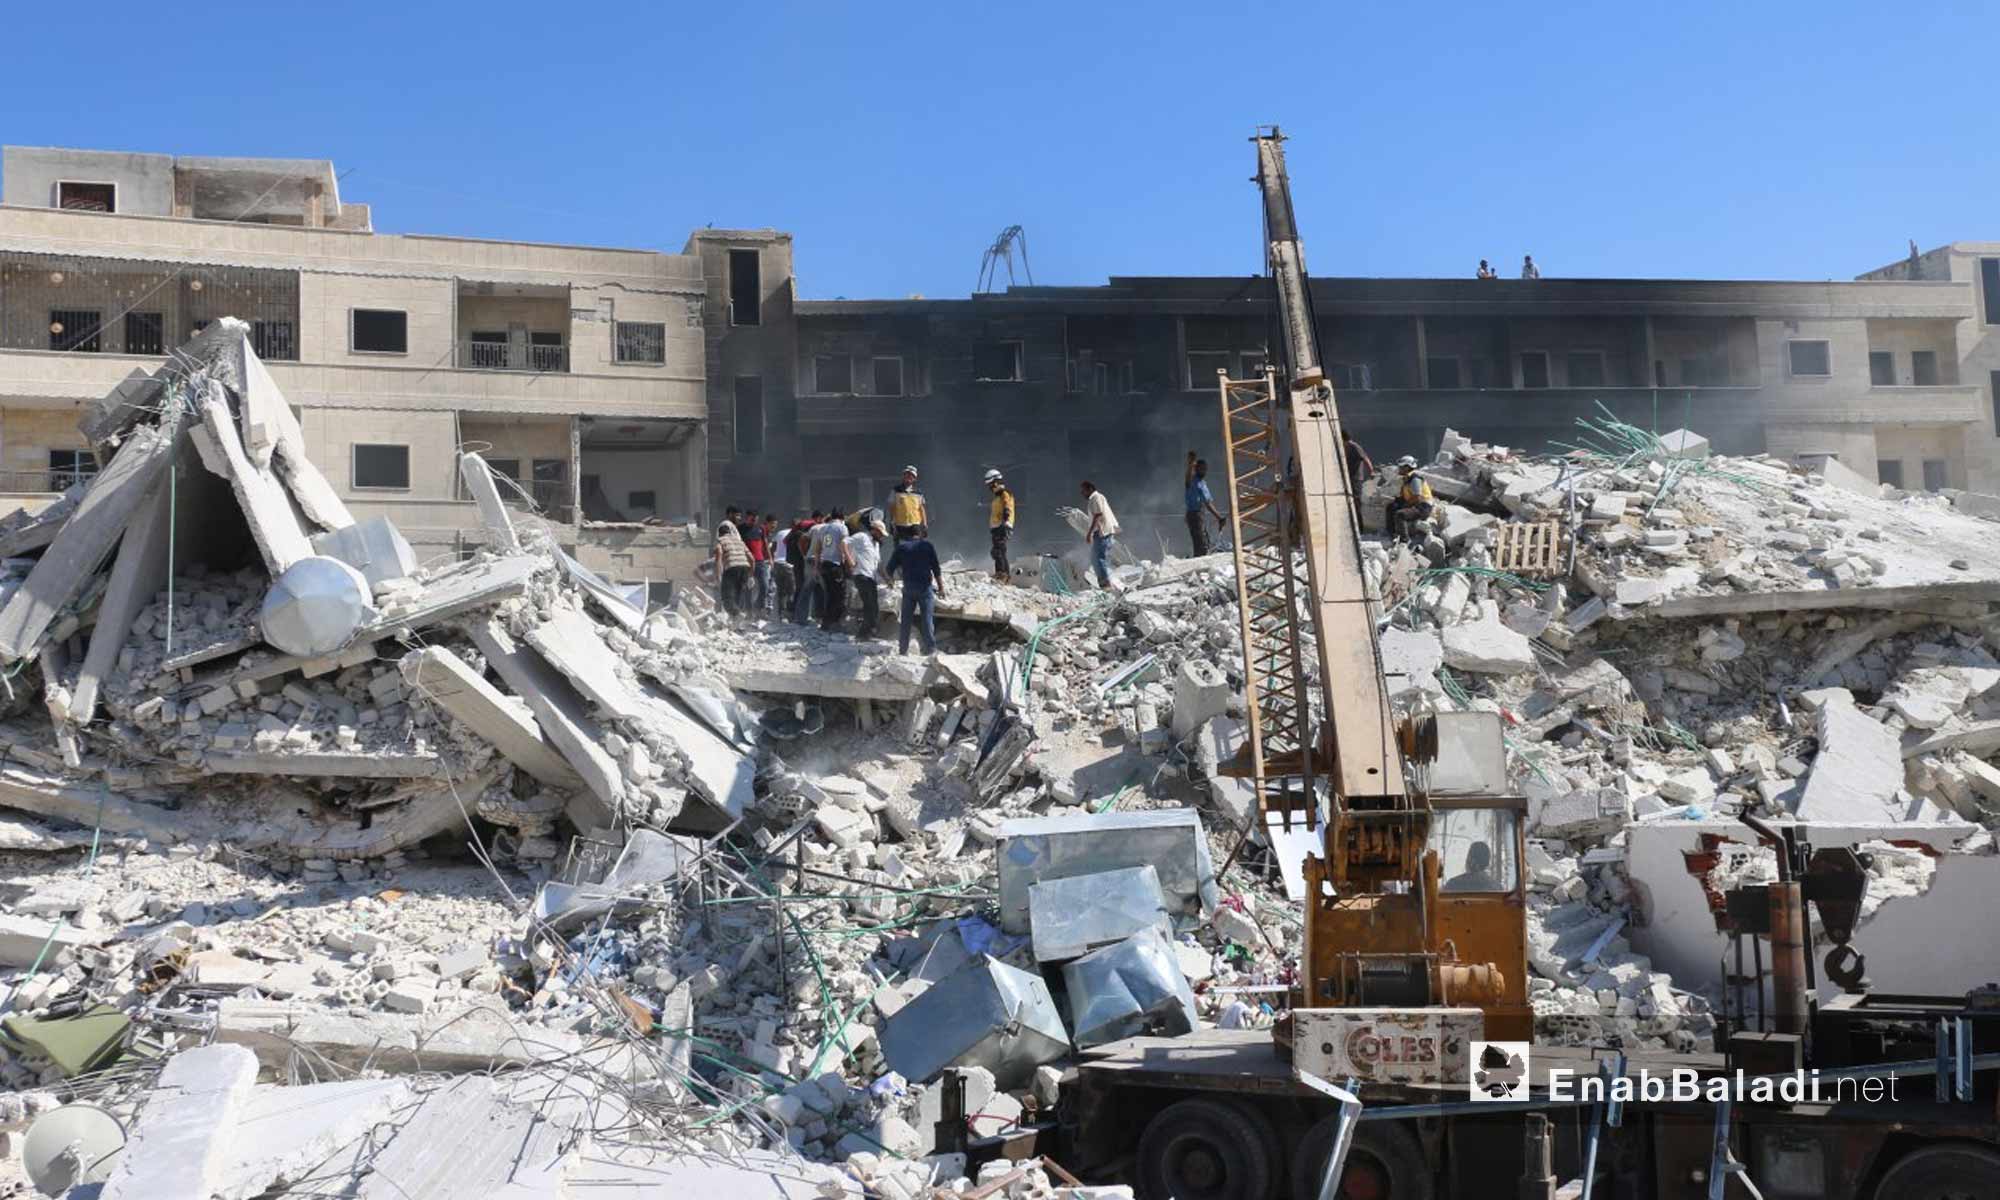 آثار الدمار الذي خلفه انفجار مستودع ذخيرة في مدينة سرمدا بريف إدلب - 12 من آب 2018 (عنب بلدي)